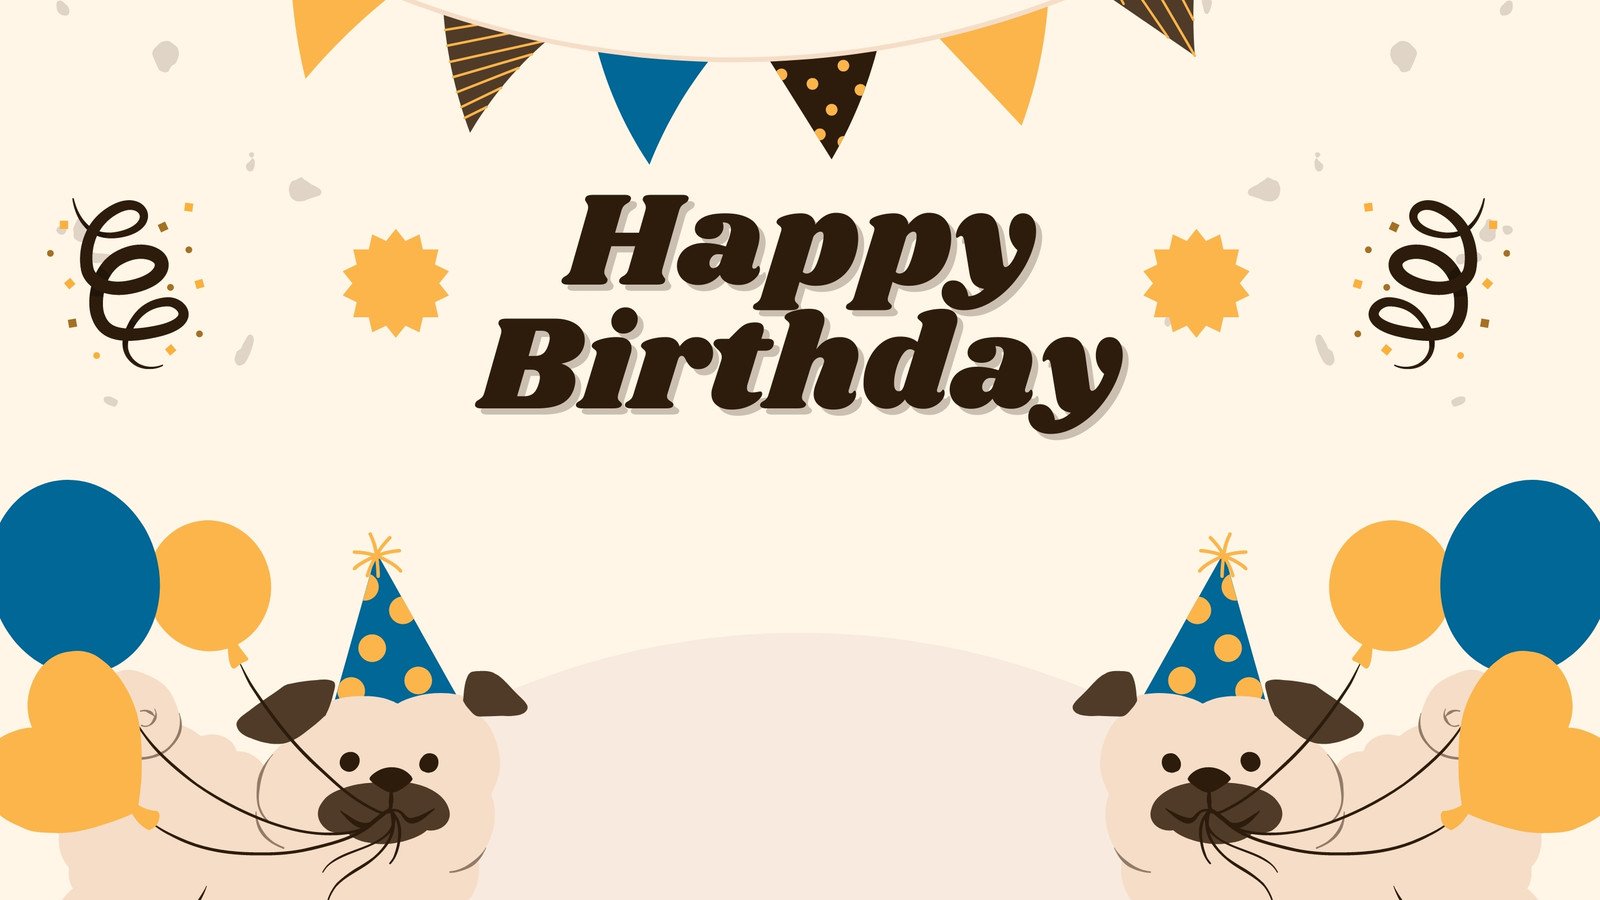 Tùy chỉnh hình nền Zoom trong dịp sinh nhật của bạn để tạo sự khác biệt. Cùng với chúc mừng sinh nhật, thêm hình ảnh và thông điệp cùng với những món quà thú vị để tạo ra một không gian đặc biệt và kỷ niệm cho bữa tiệc trực tuyến của bạn.